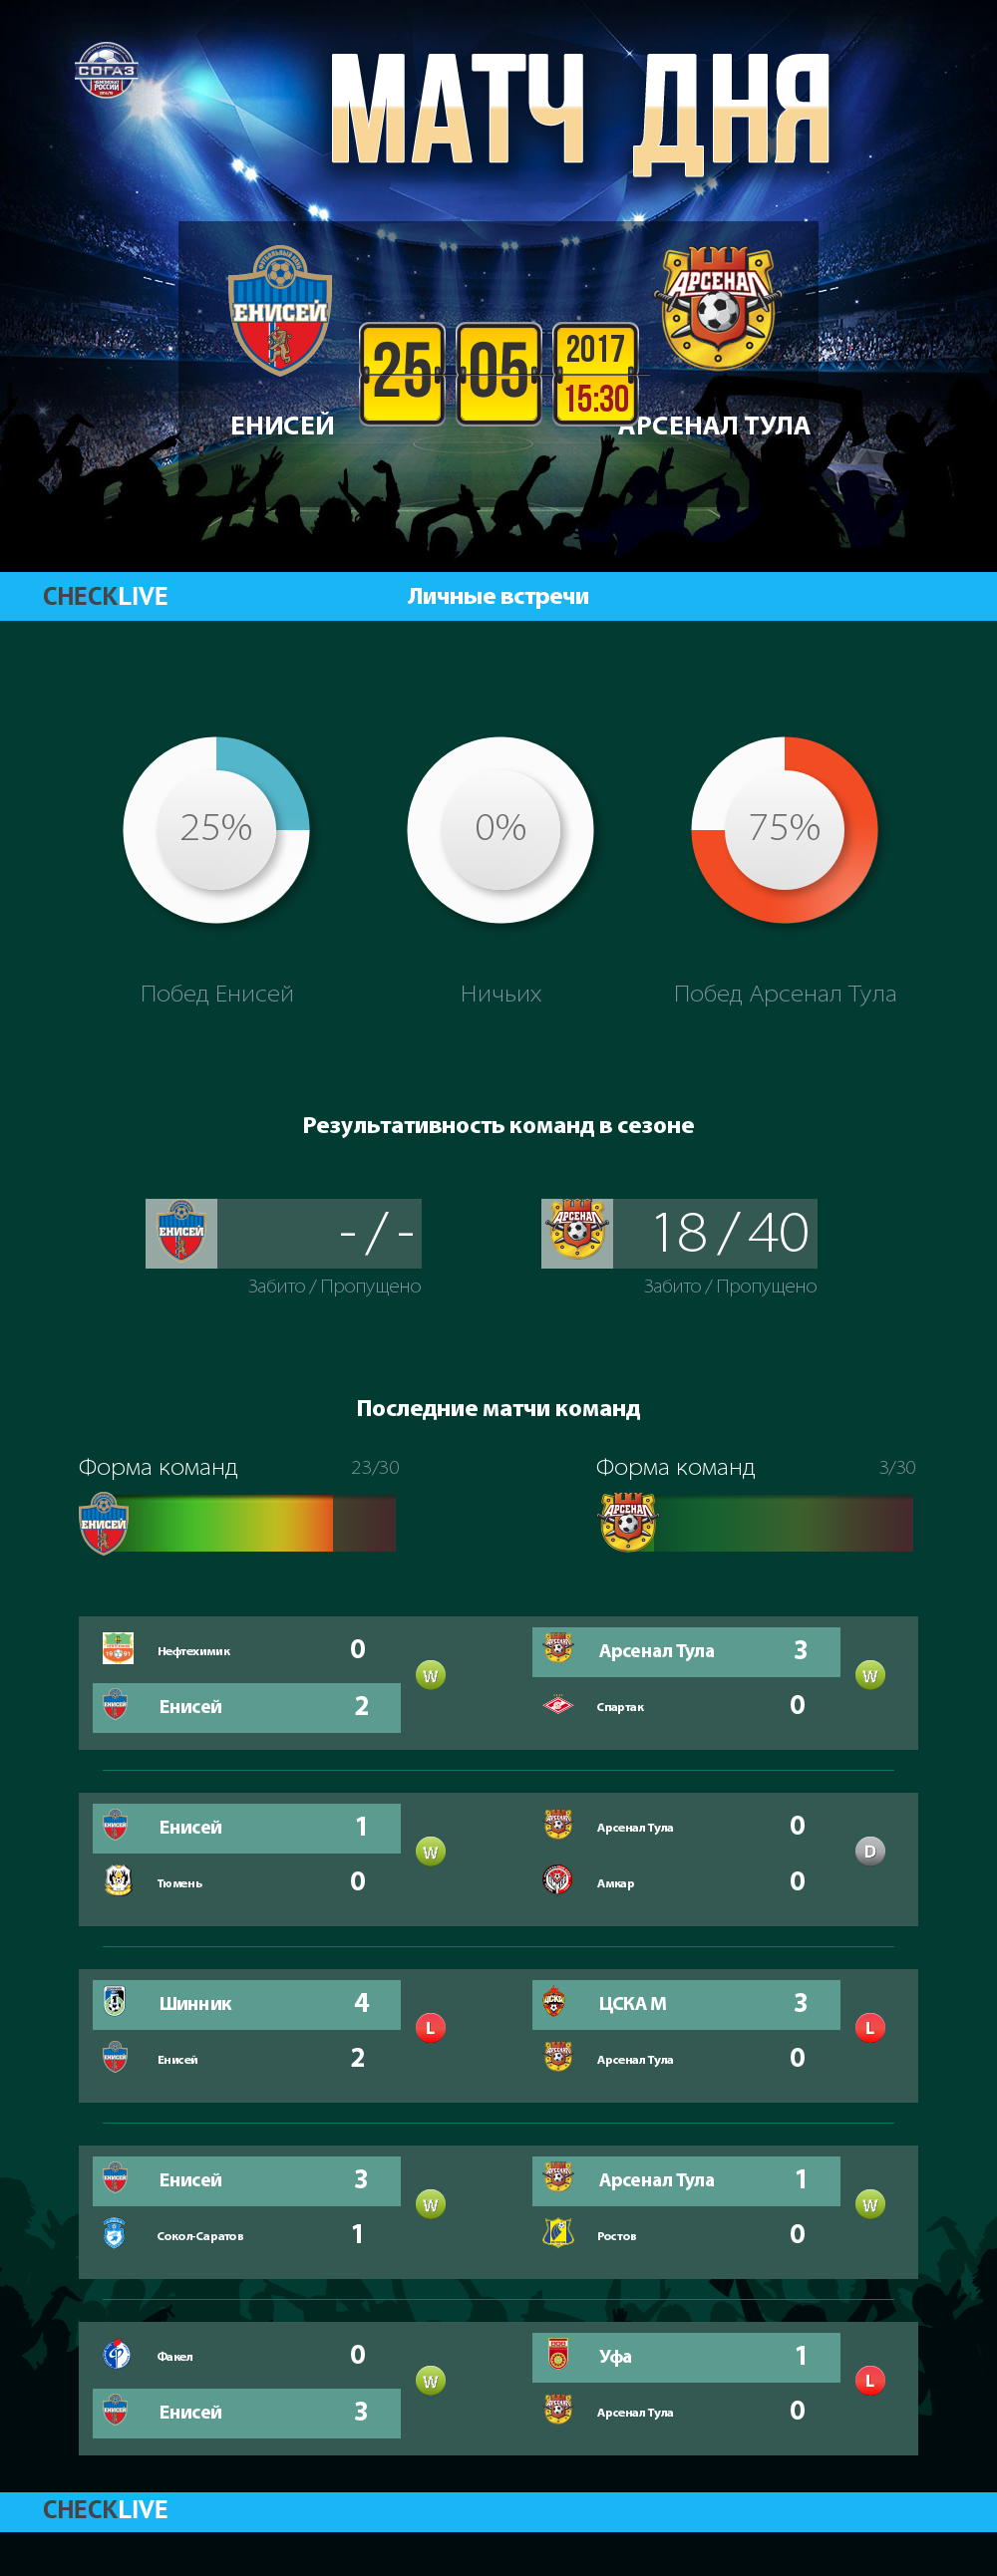 Инфографика Енисей и Арсенал Тула матч дня 25.05.2017